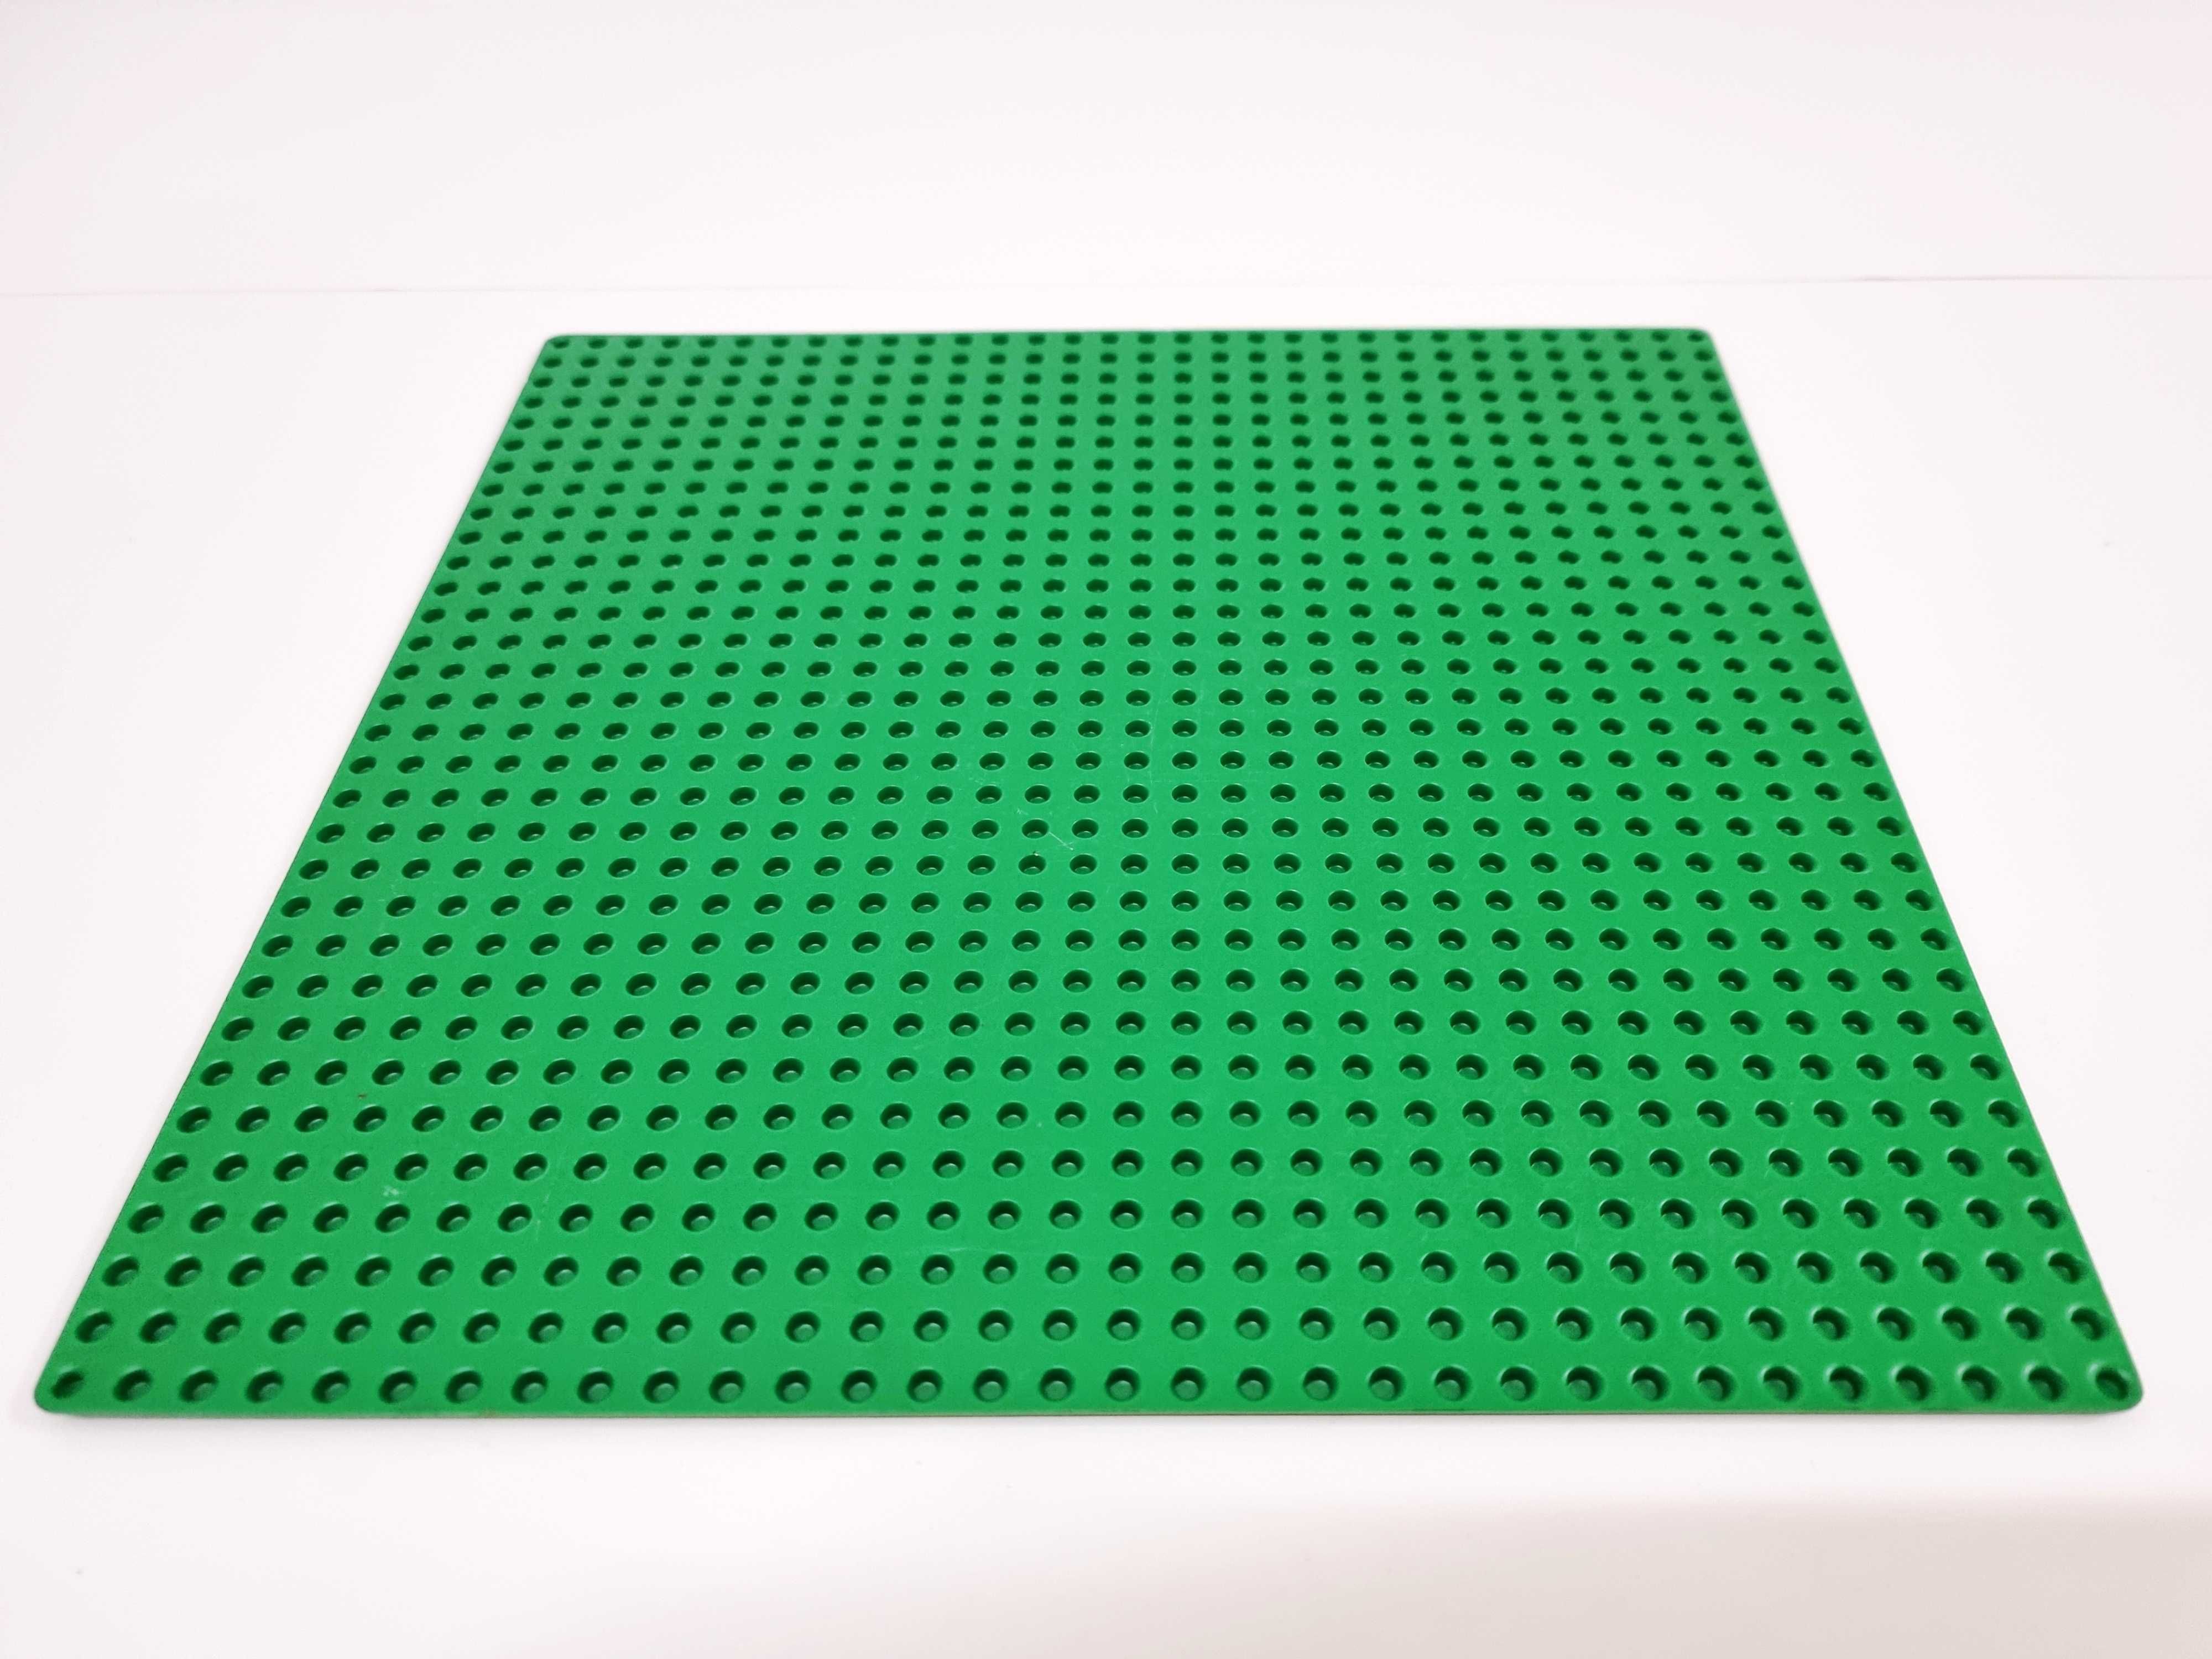 Placa base Lego 840-1 de 1980